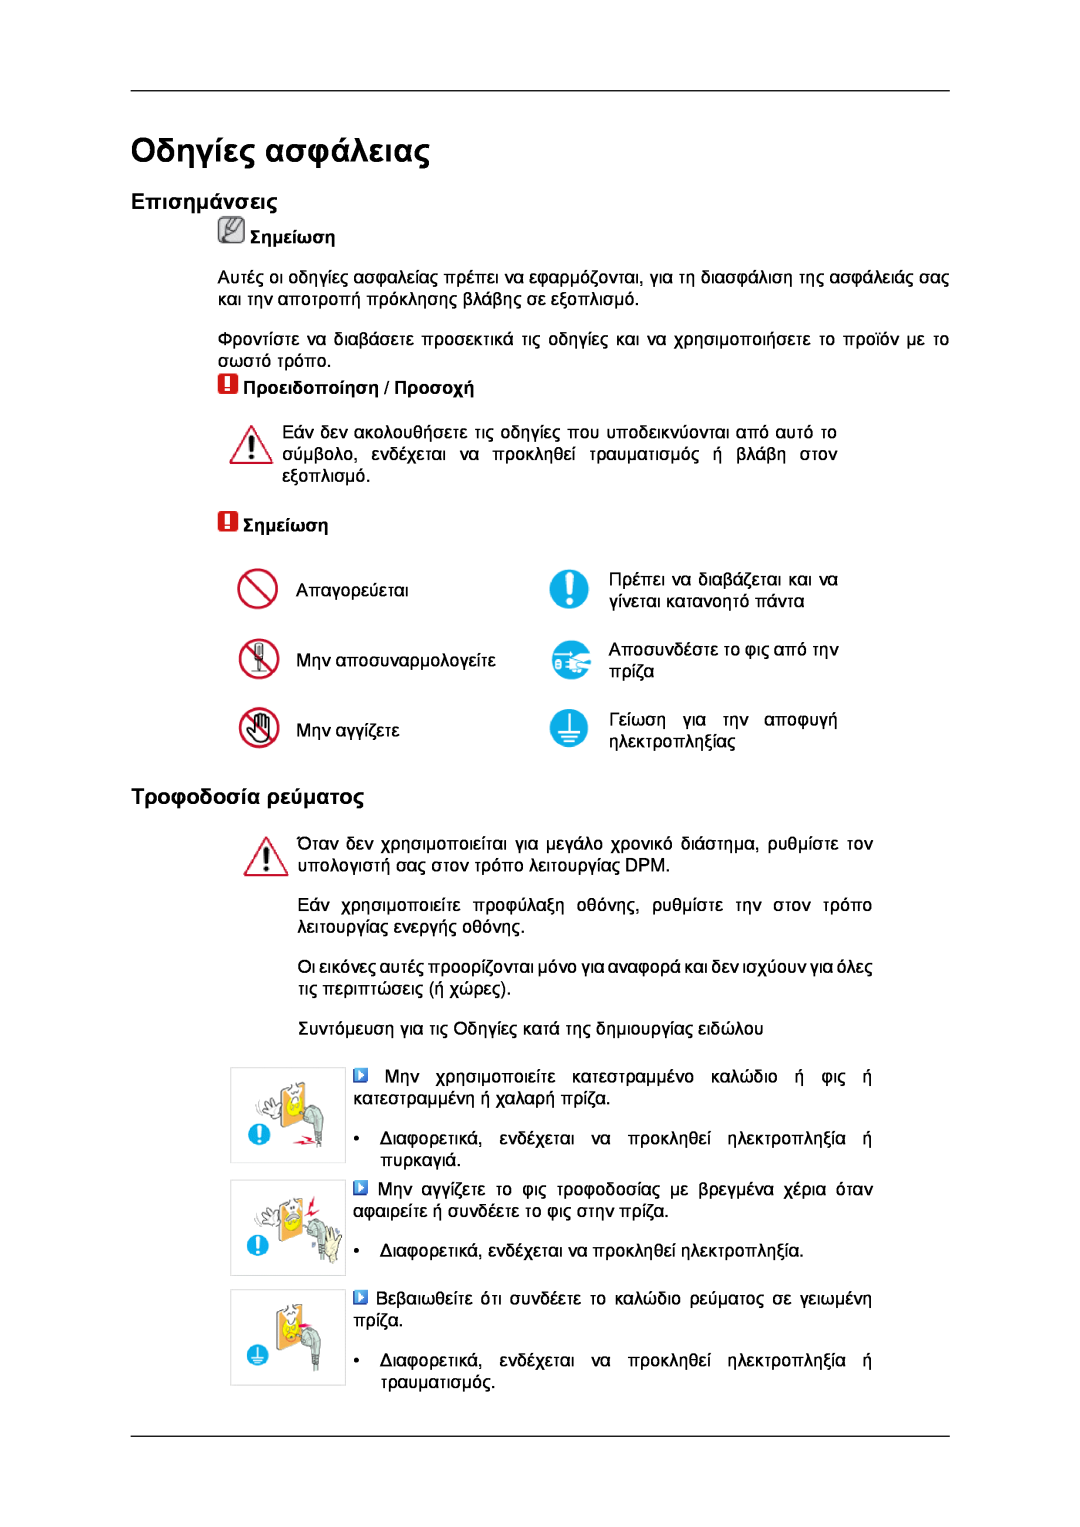 Samsung LH40MRPLBF/EN manual Οδηγίες ασφάλειας, Επισημάνσεις, Τροφοδοσία ρεύματος, Σημείωση, Προειδοποίηση / Προσοχή 